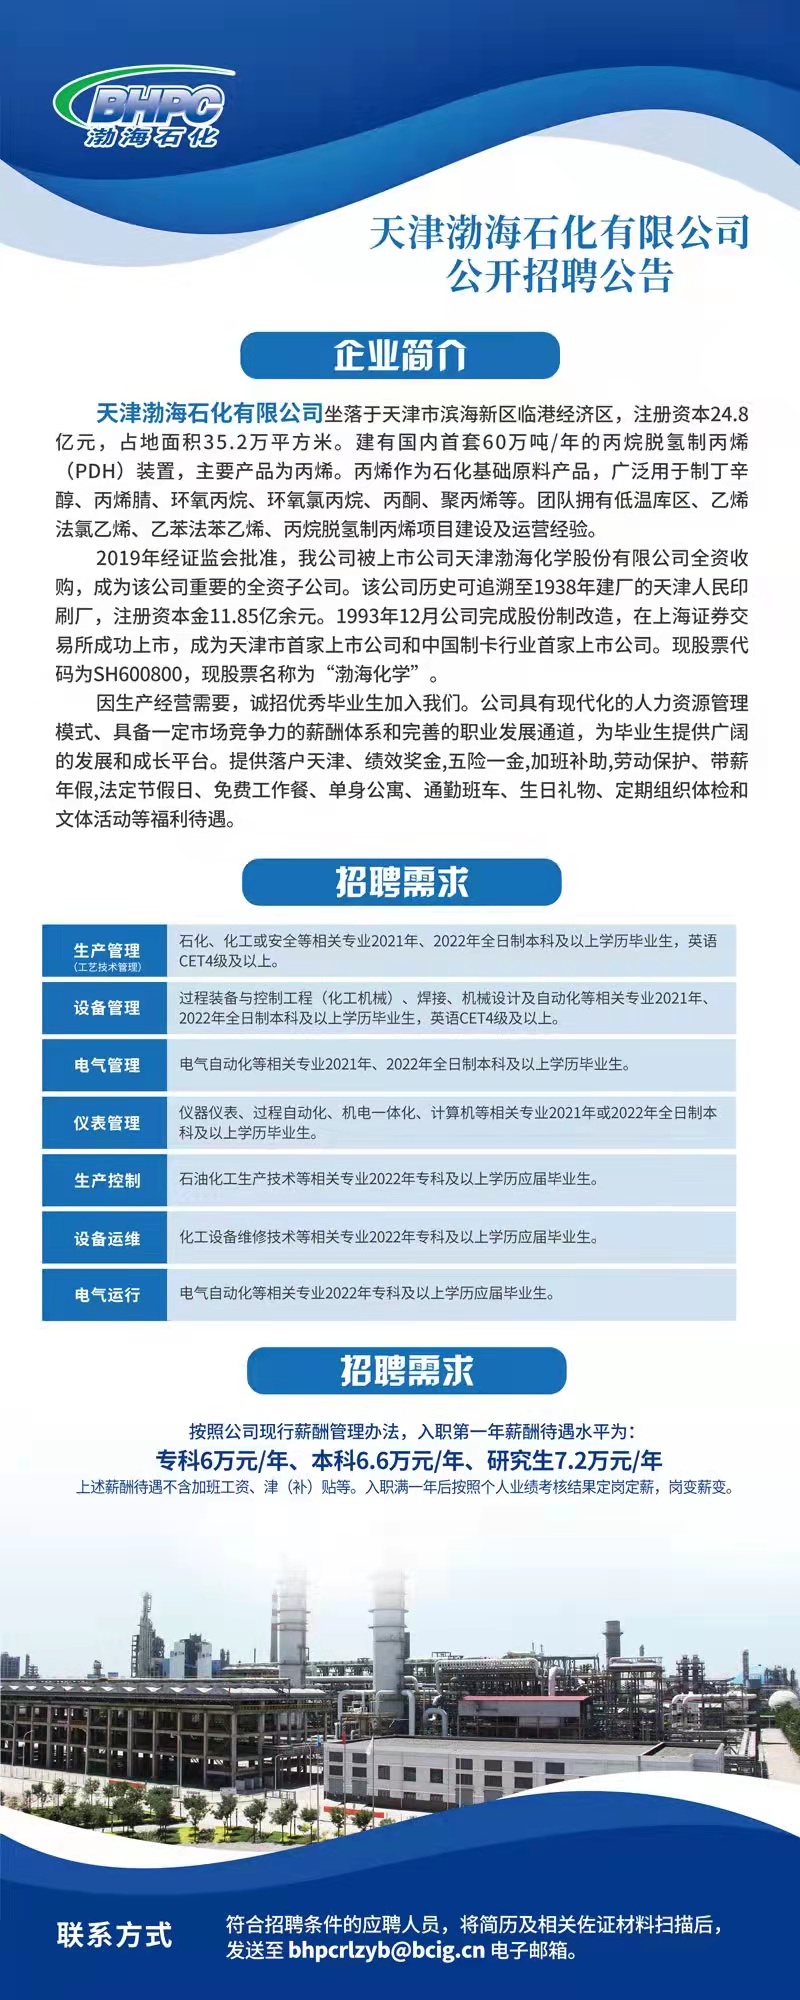 天津渤海石化有限公司 公开招聘公告.jpg